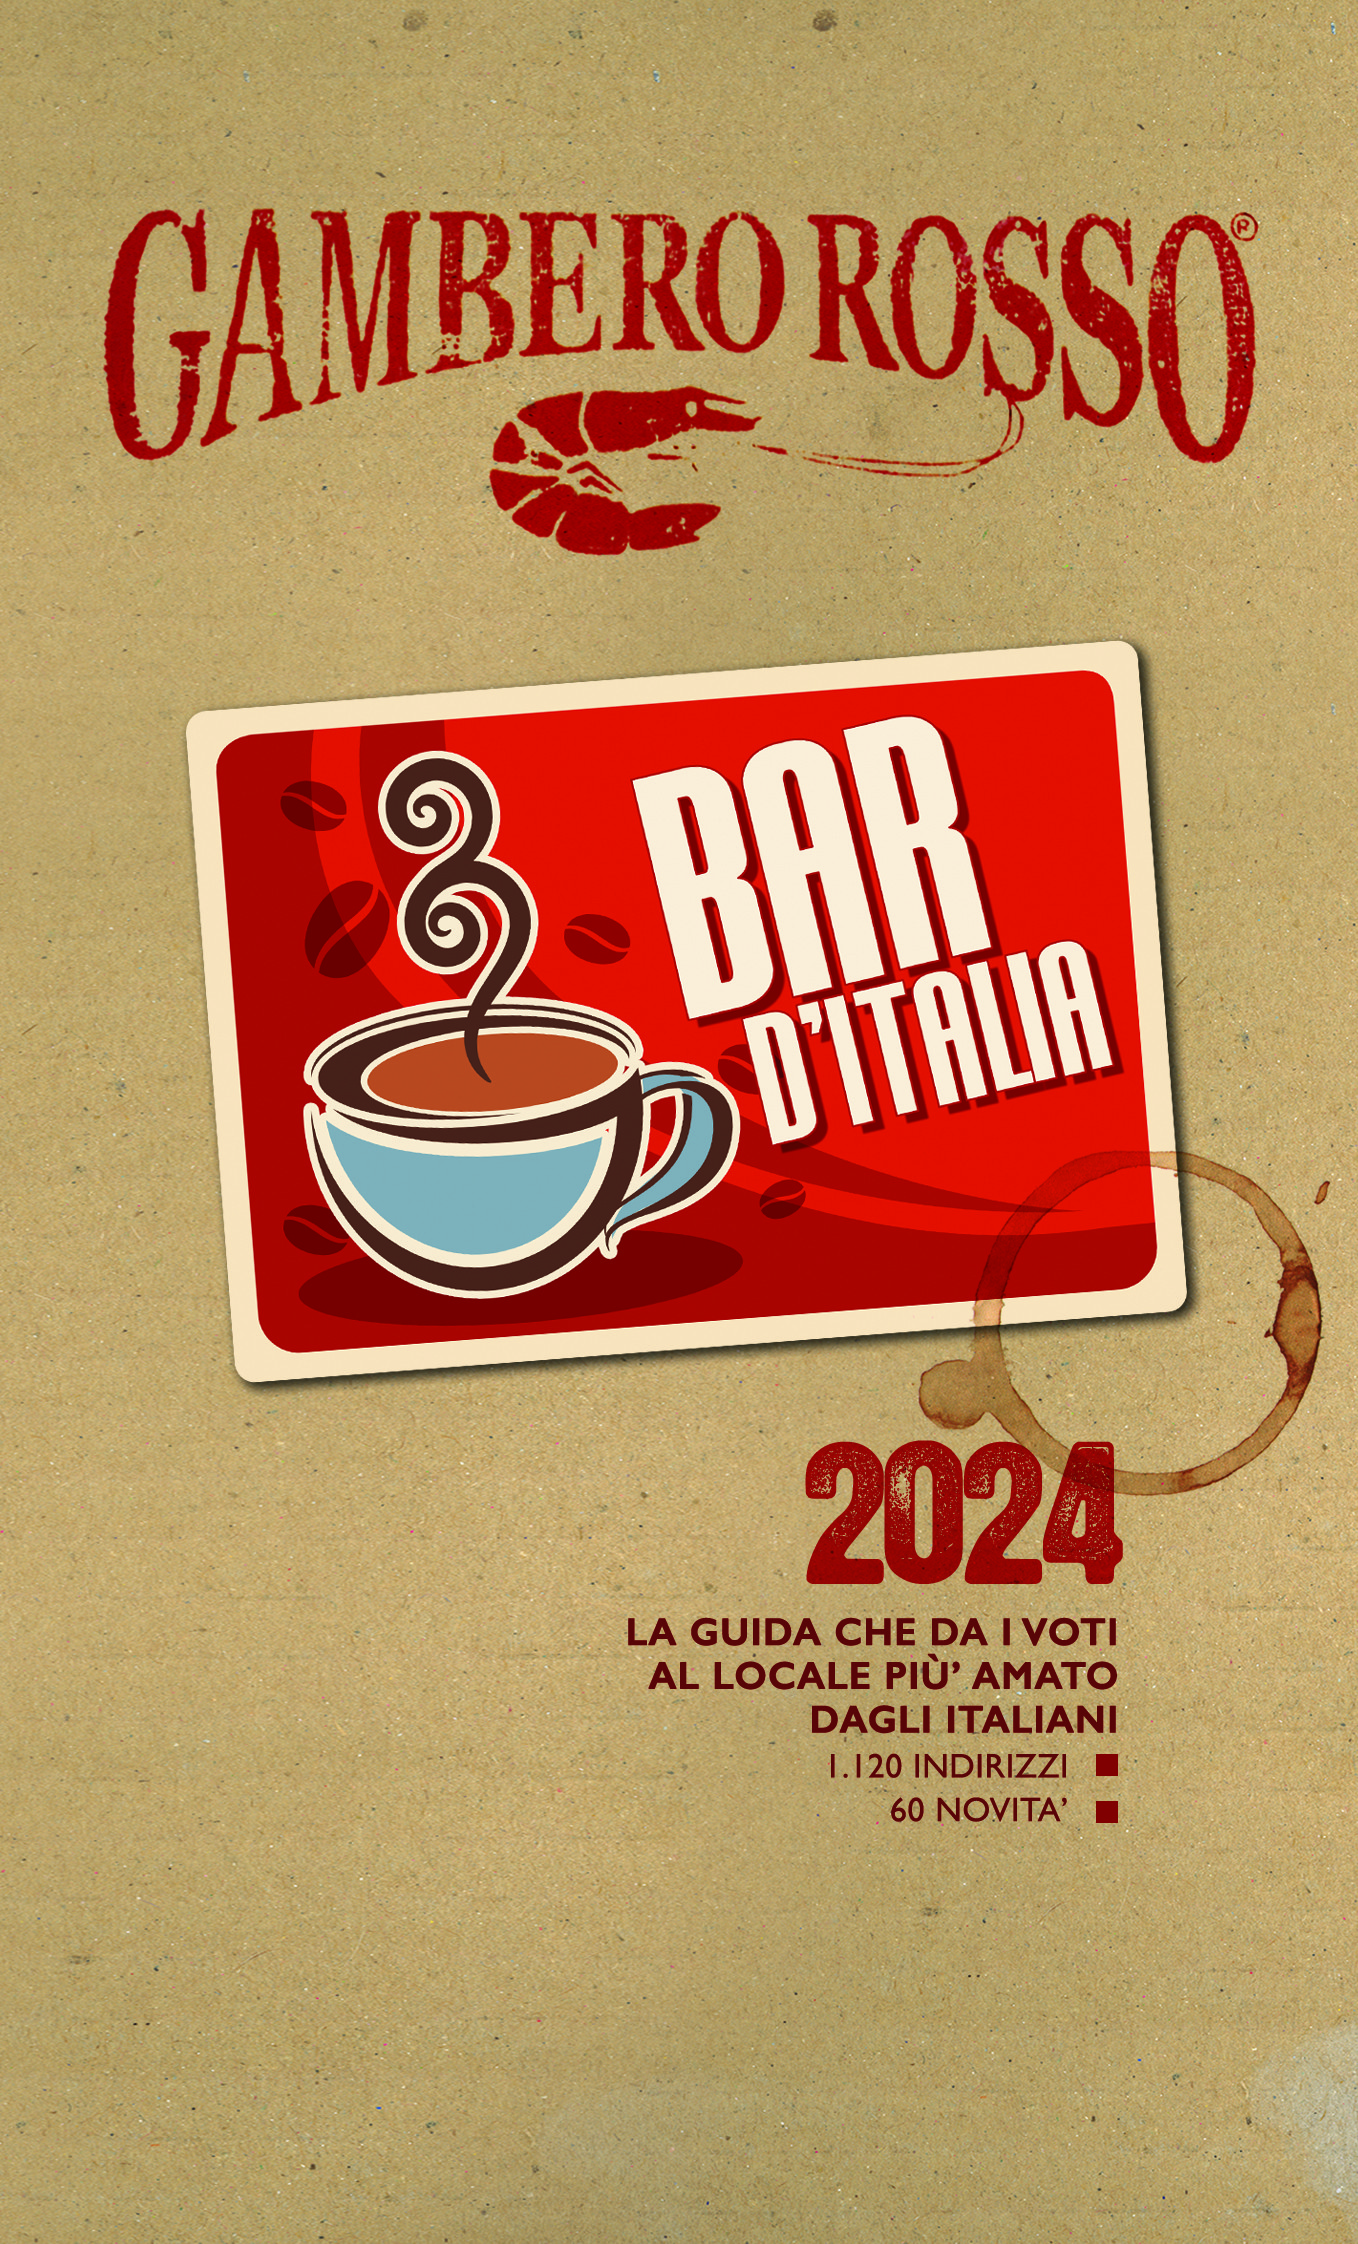 Bar d'Italia 2024 Gambero Rosso: i premiati - Carlo Zucchetti